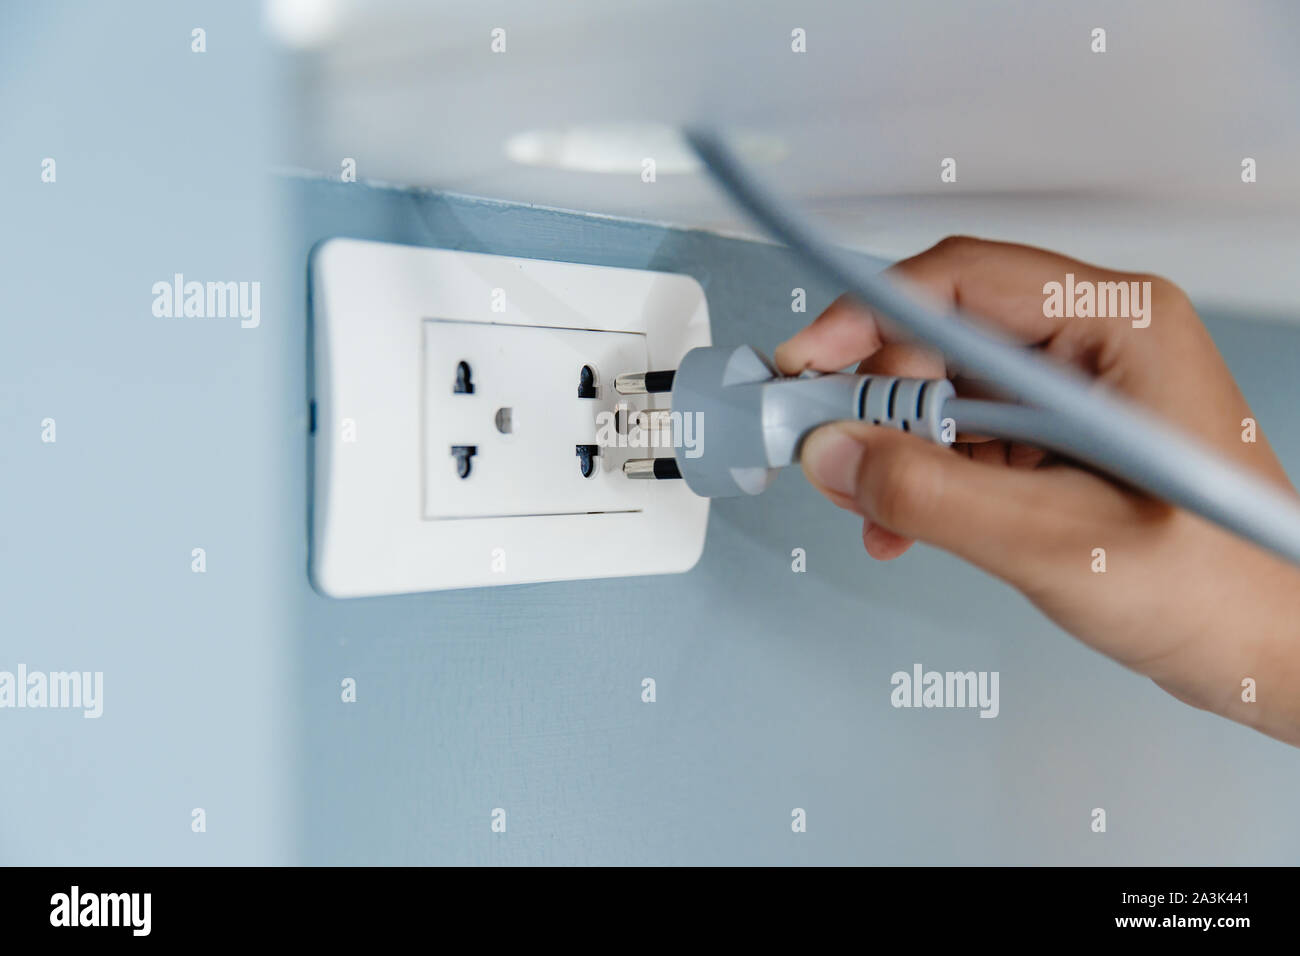 Steckdose mit eingestecktem Stecker an hellblauer Wand, Platz für Text.  Stromversorgung Stockfotografie - Alamy